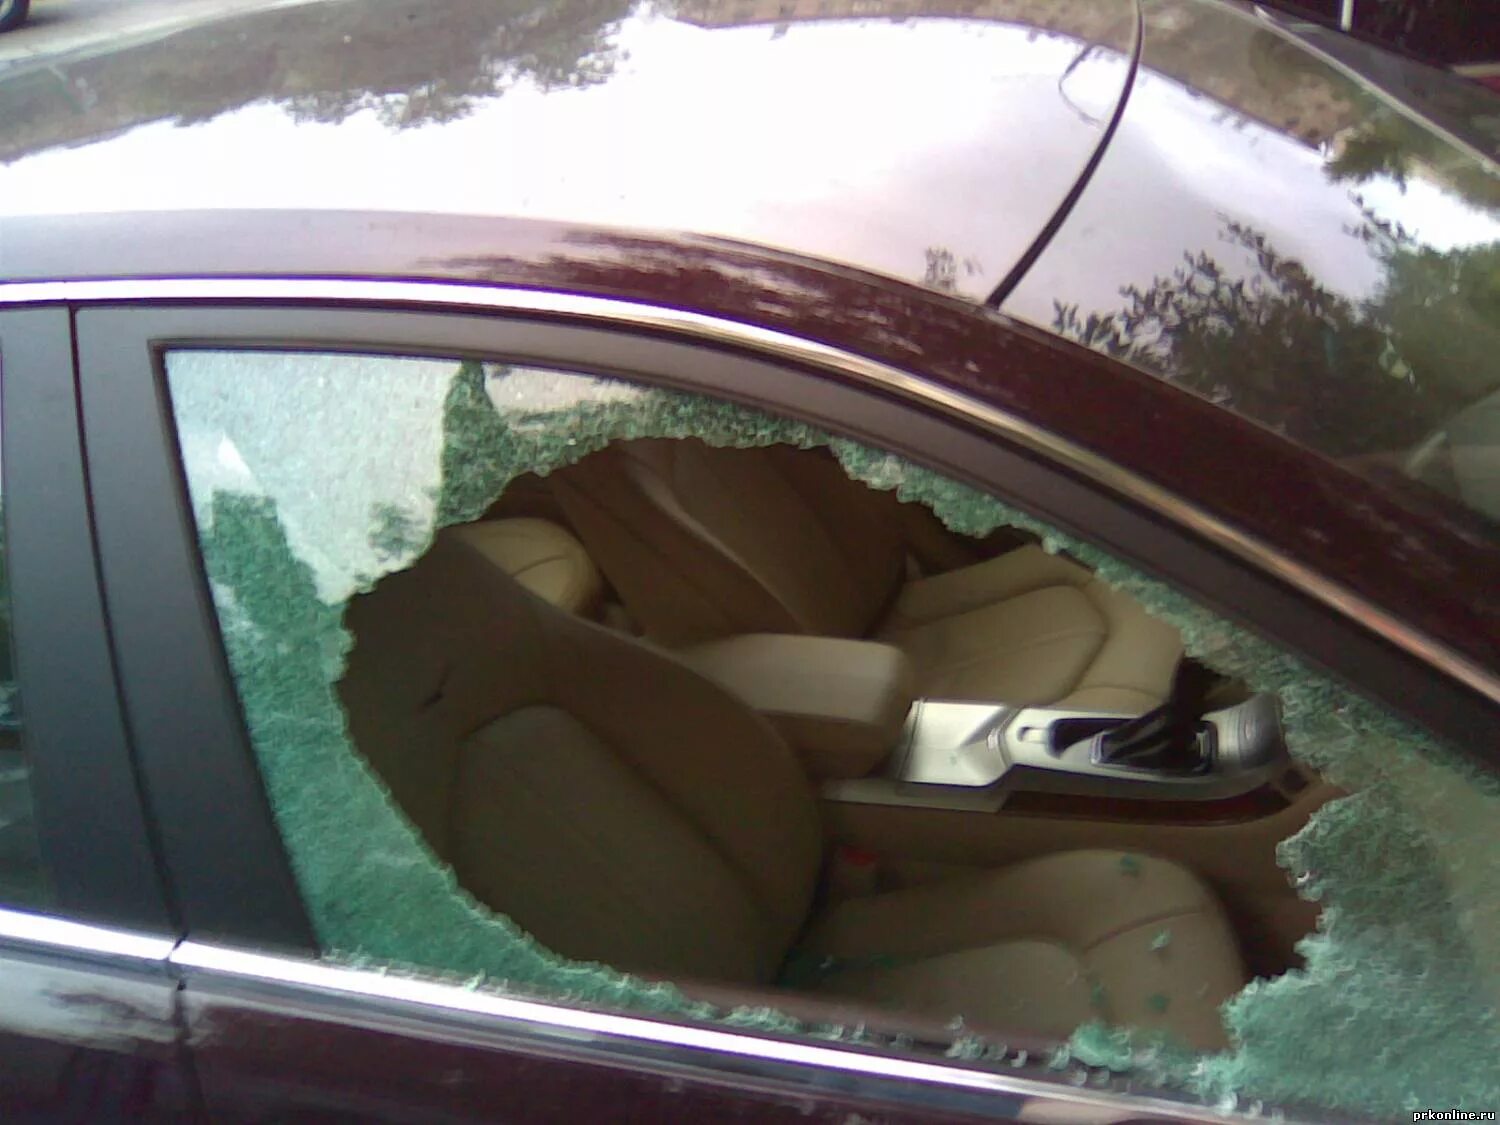 Разбили окно машины. Разбили стекло в машине. Разбитое окно машины. Разбить окно автомобиля. Разбитое боковое стекло.